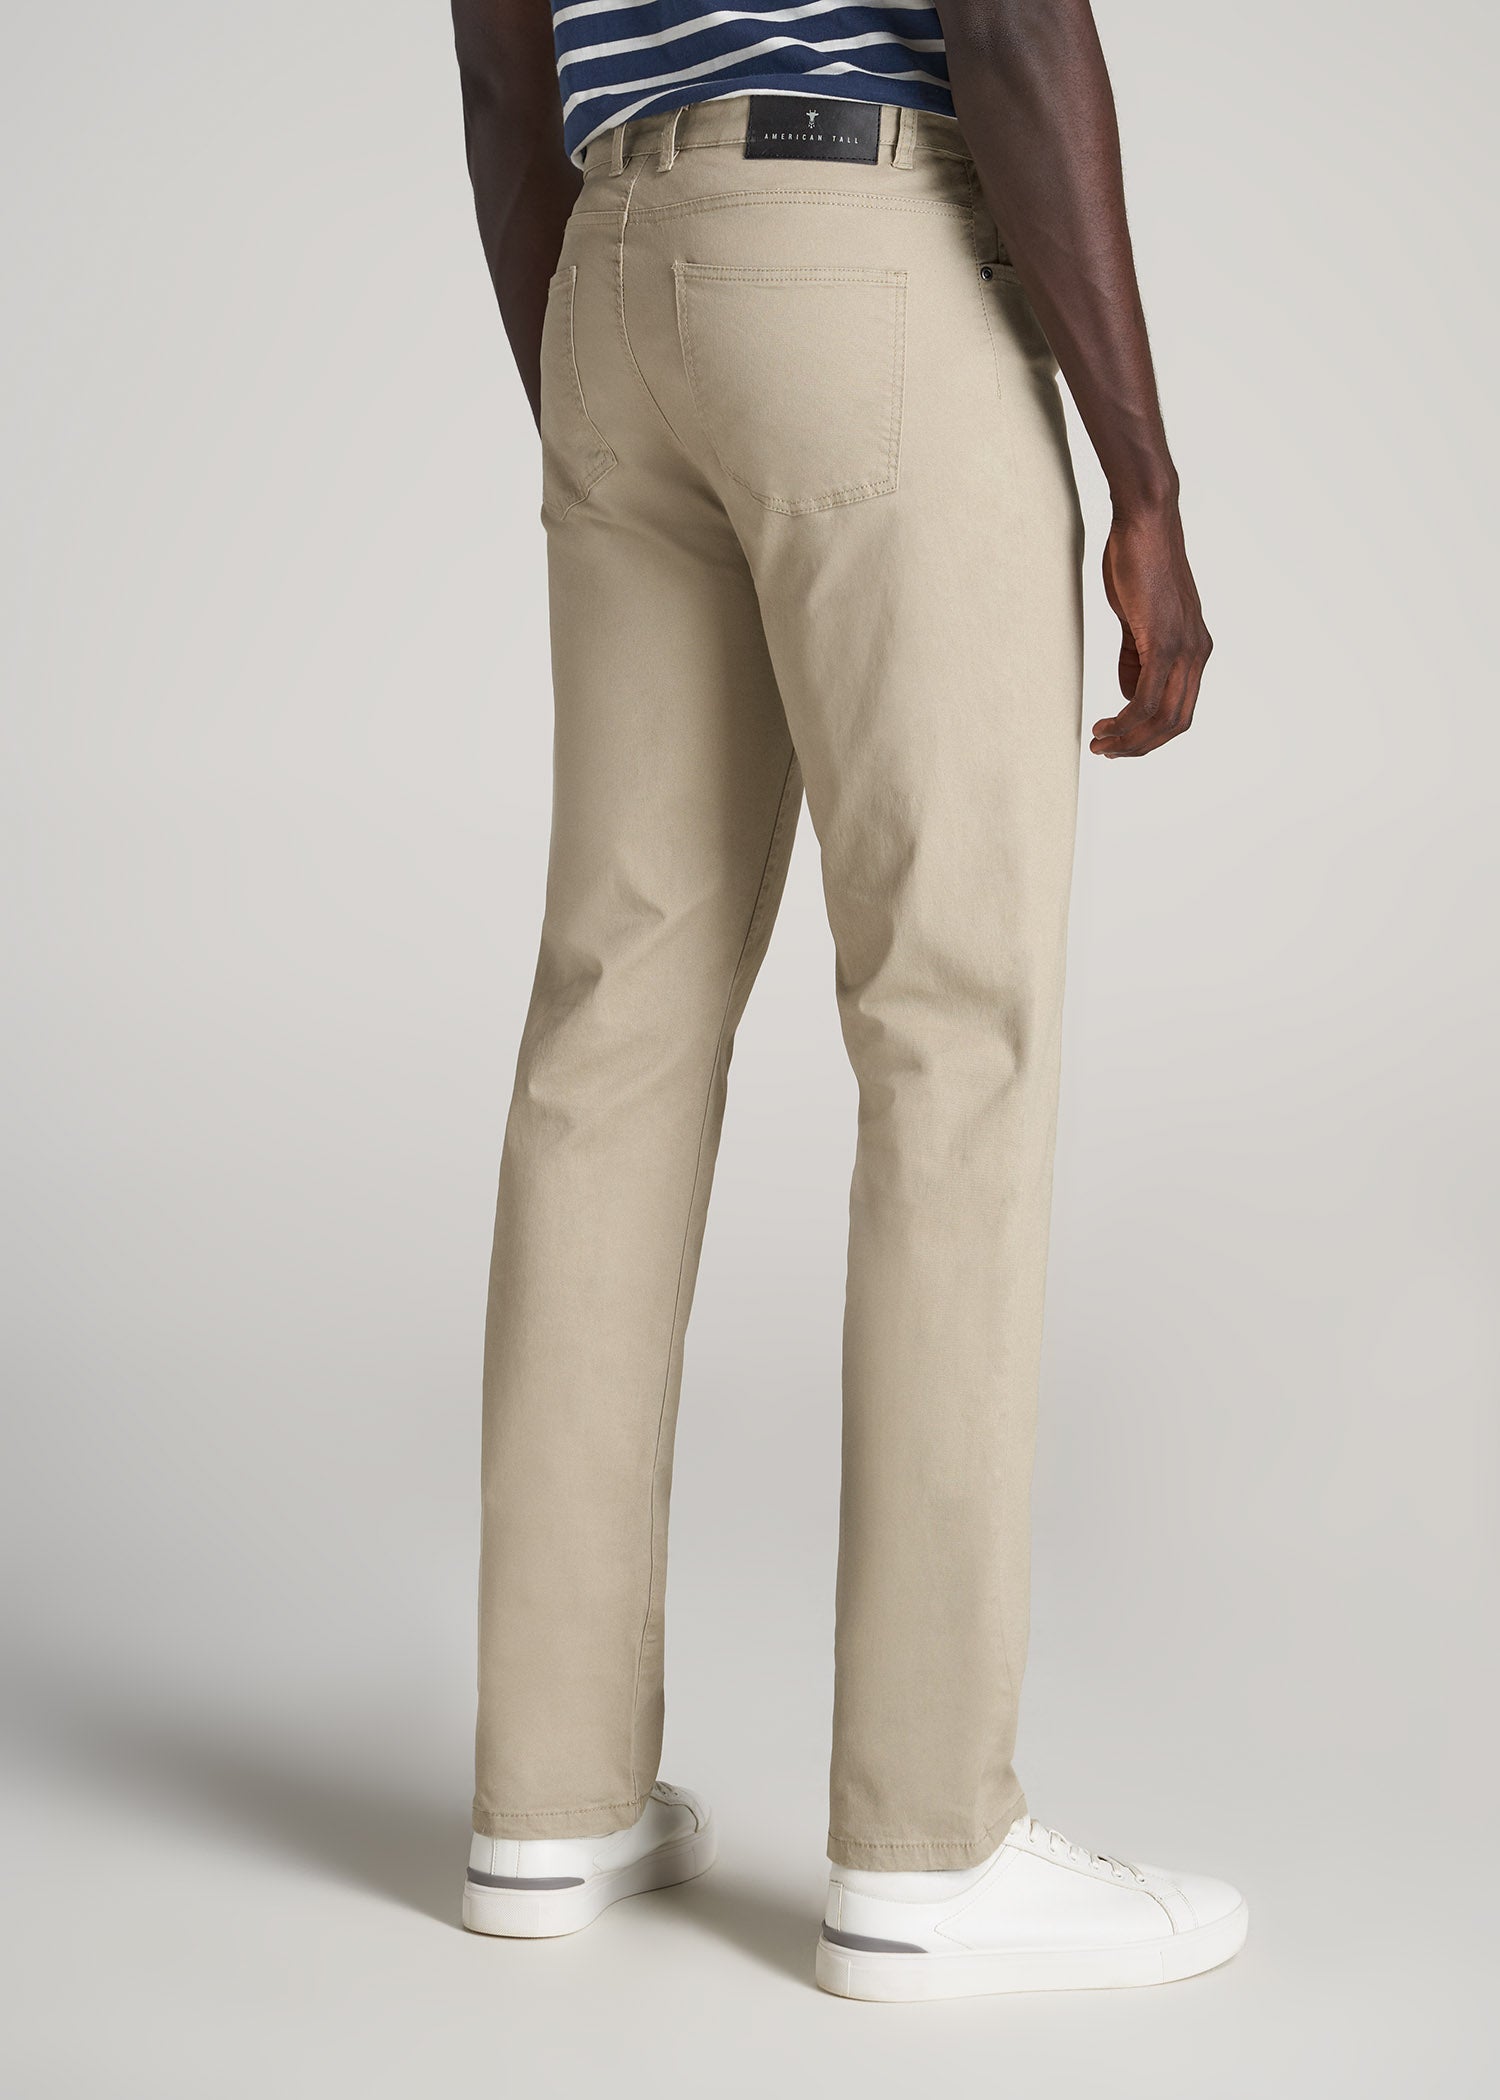 J1 STRAIGHT Leg Five-Pocket Pants for Tall Men in Desert Khaki